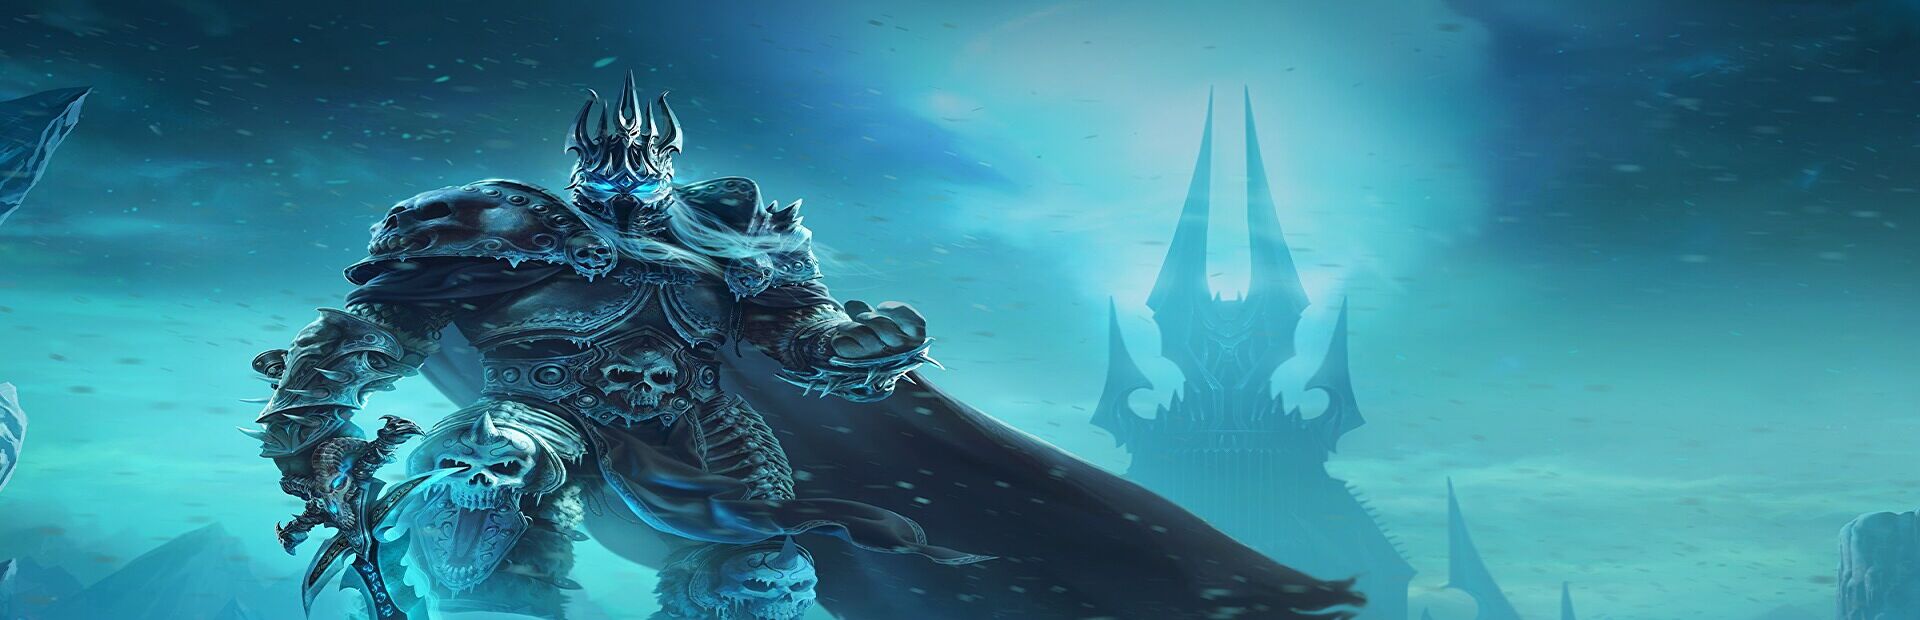 Steam Workshop::Lich King 4K - World Of Warcraft